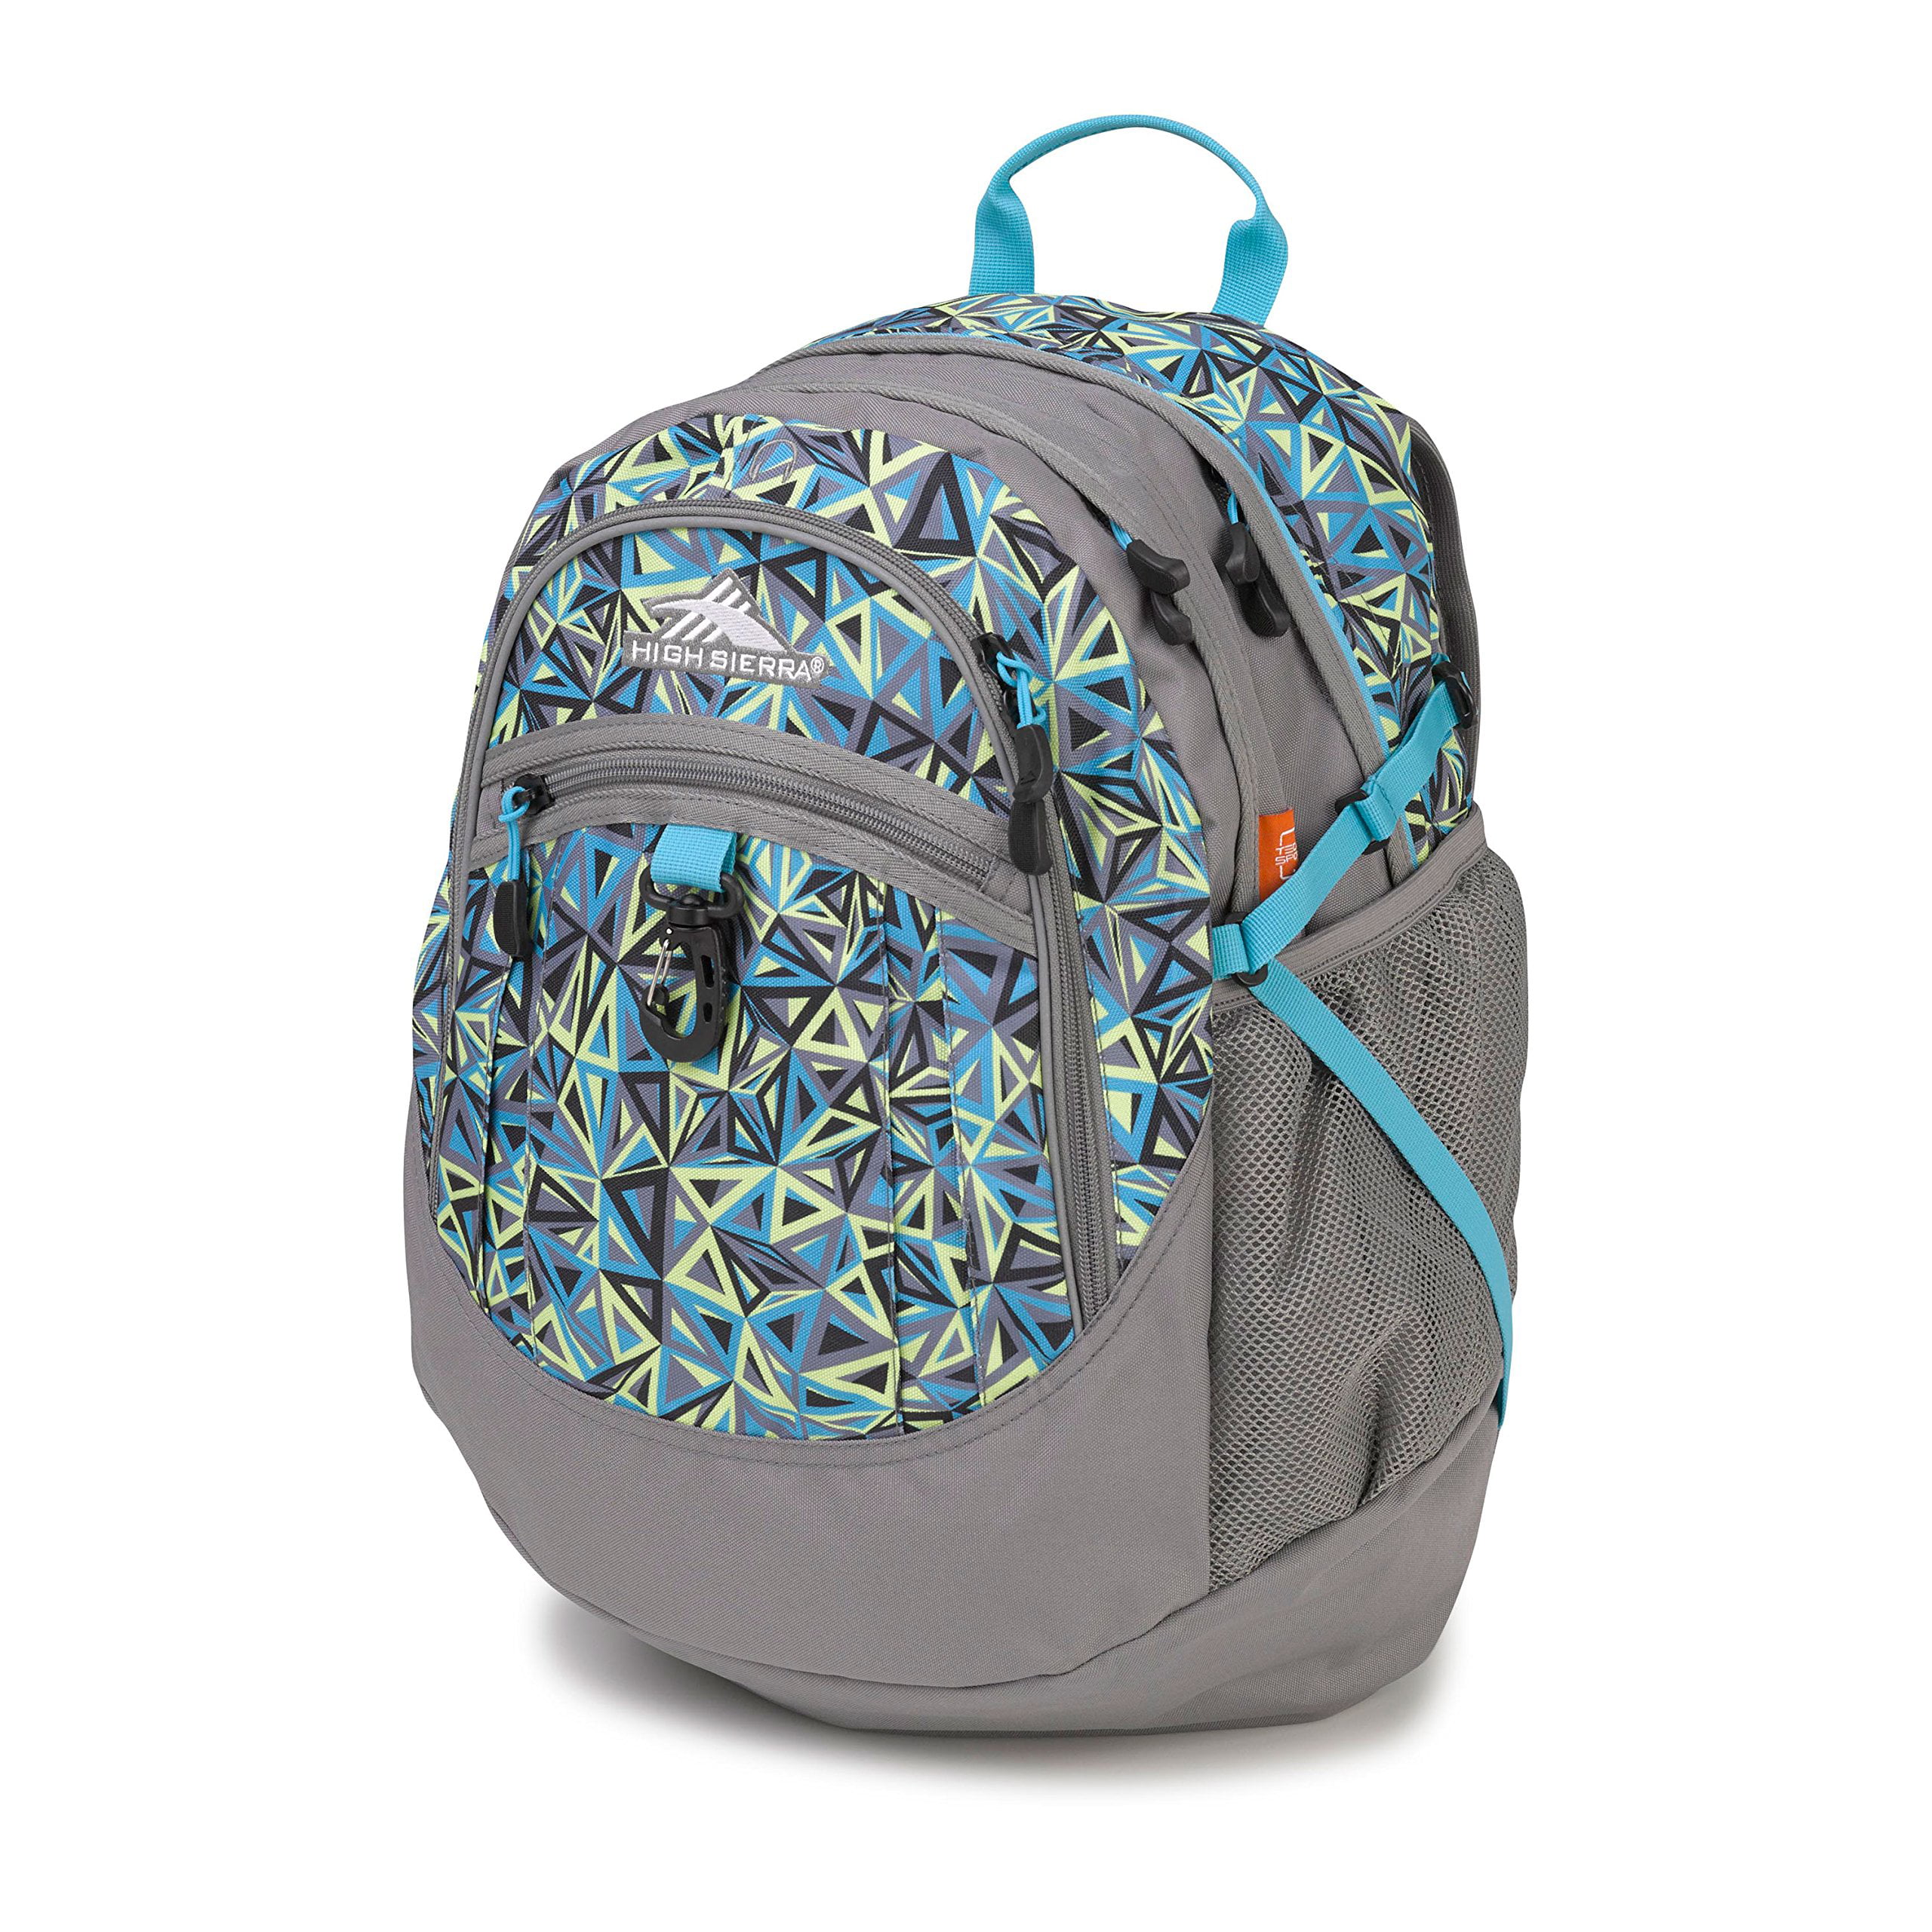 Electric Geo//Charcoal//Tropic Teal High Sierra Fatboy Backpack 19.5 x 13 x 7-Inch